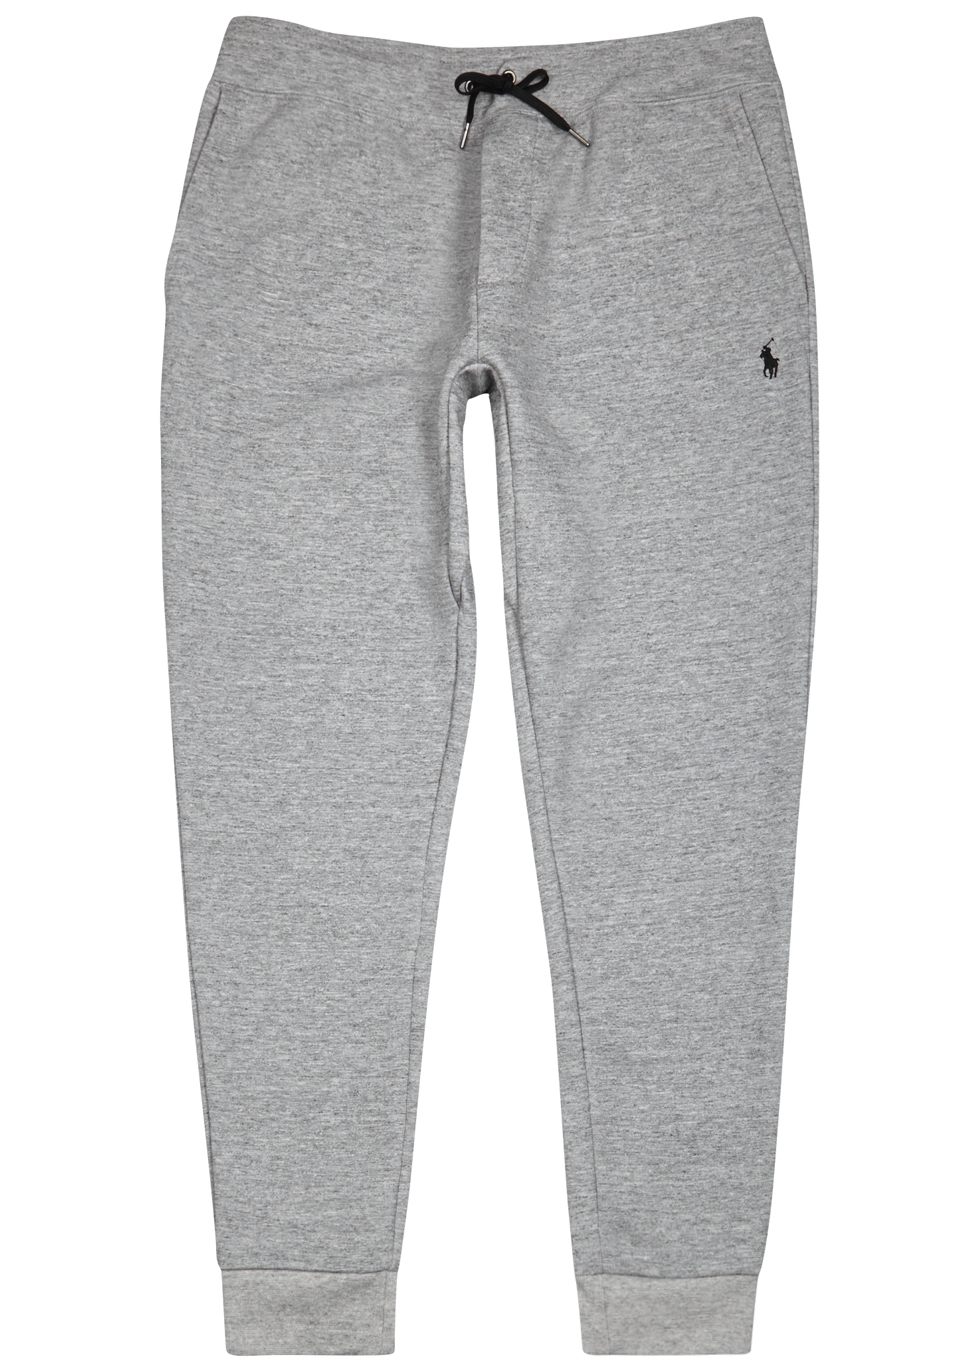 Buy > ralph lauren grey jogging pants > in stock